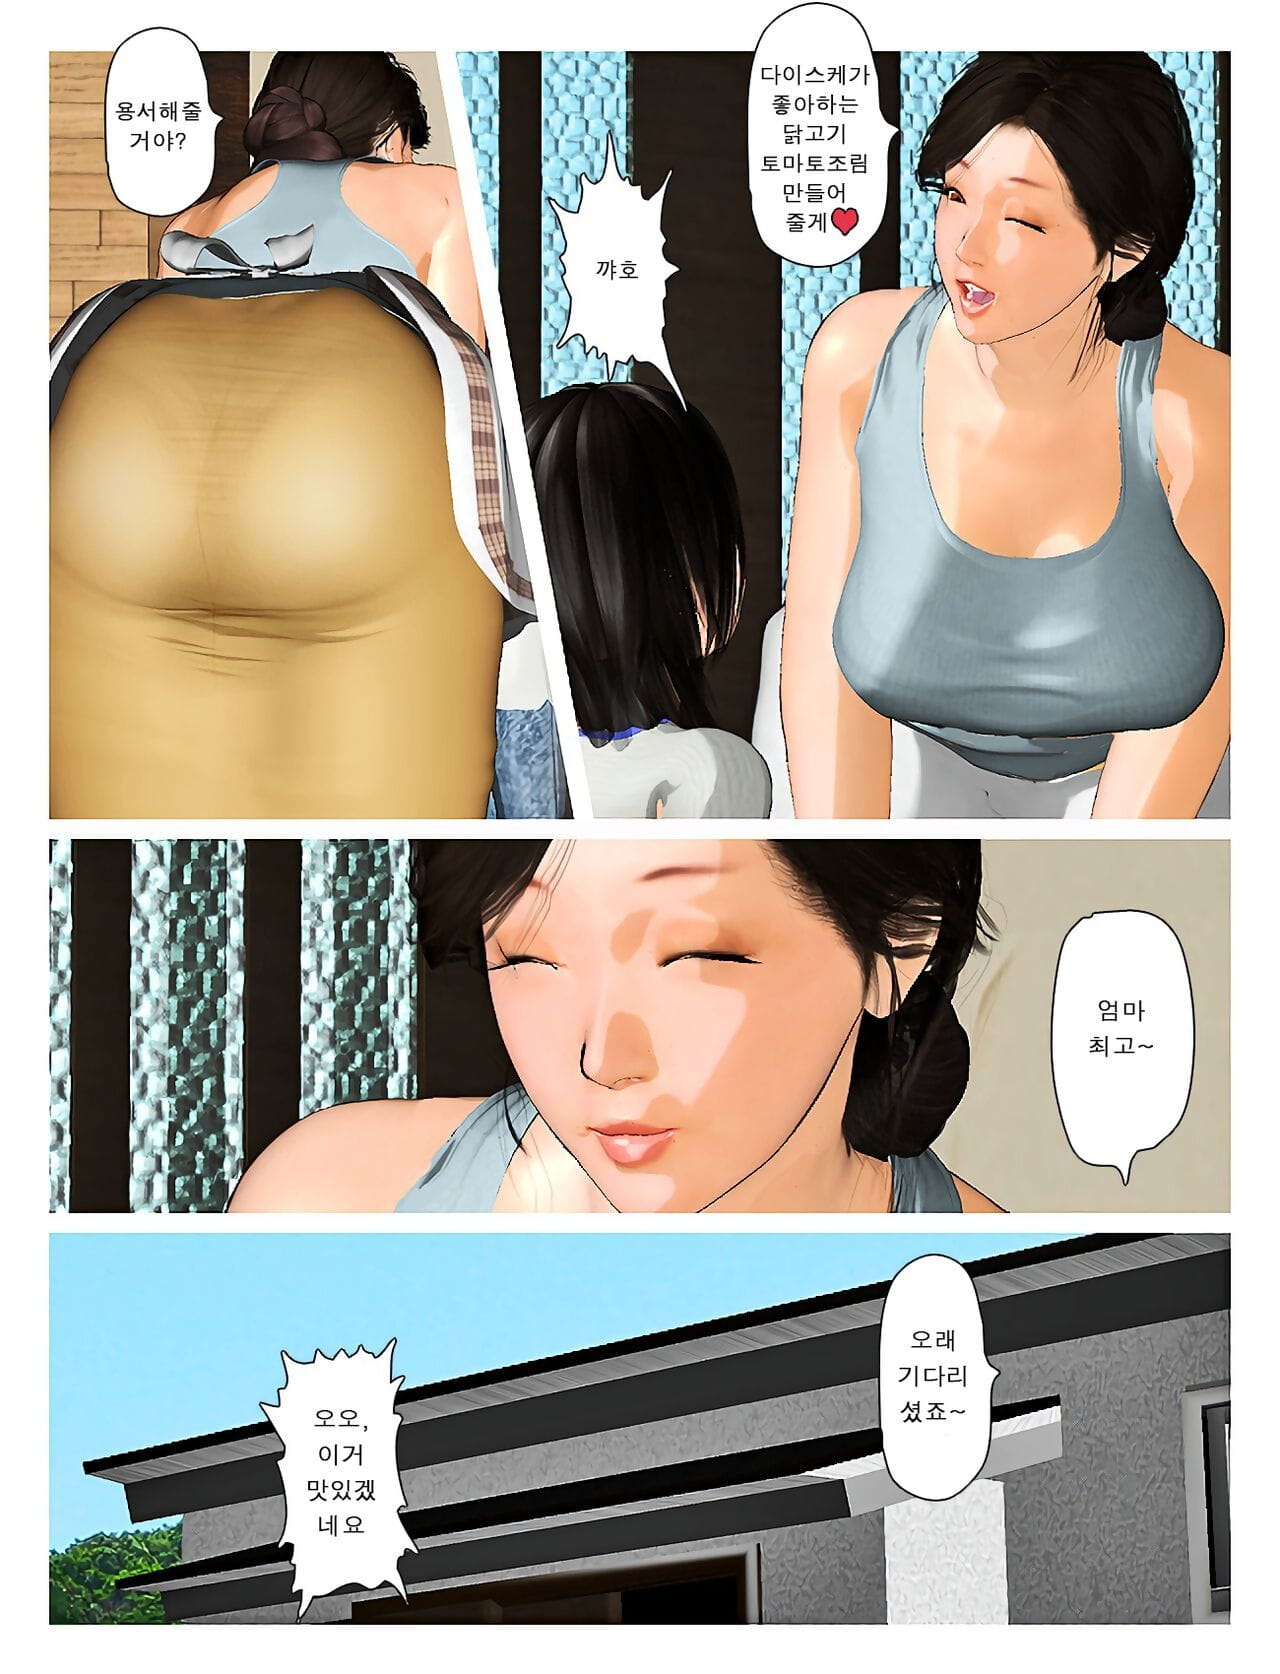 Kyou no misako San 2019:3 오늘의 미사코씨 2019:3 page 1